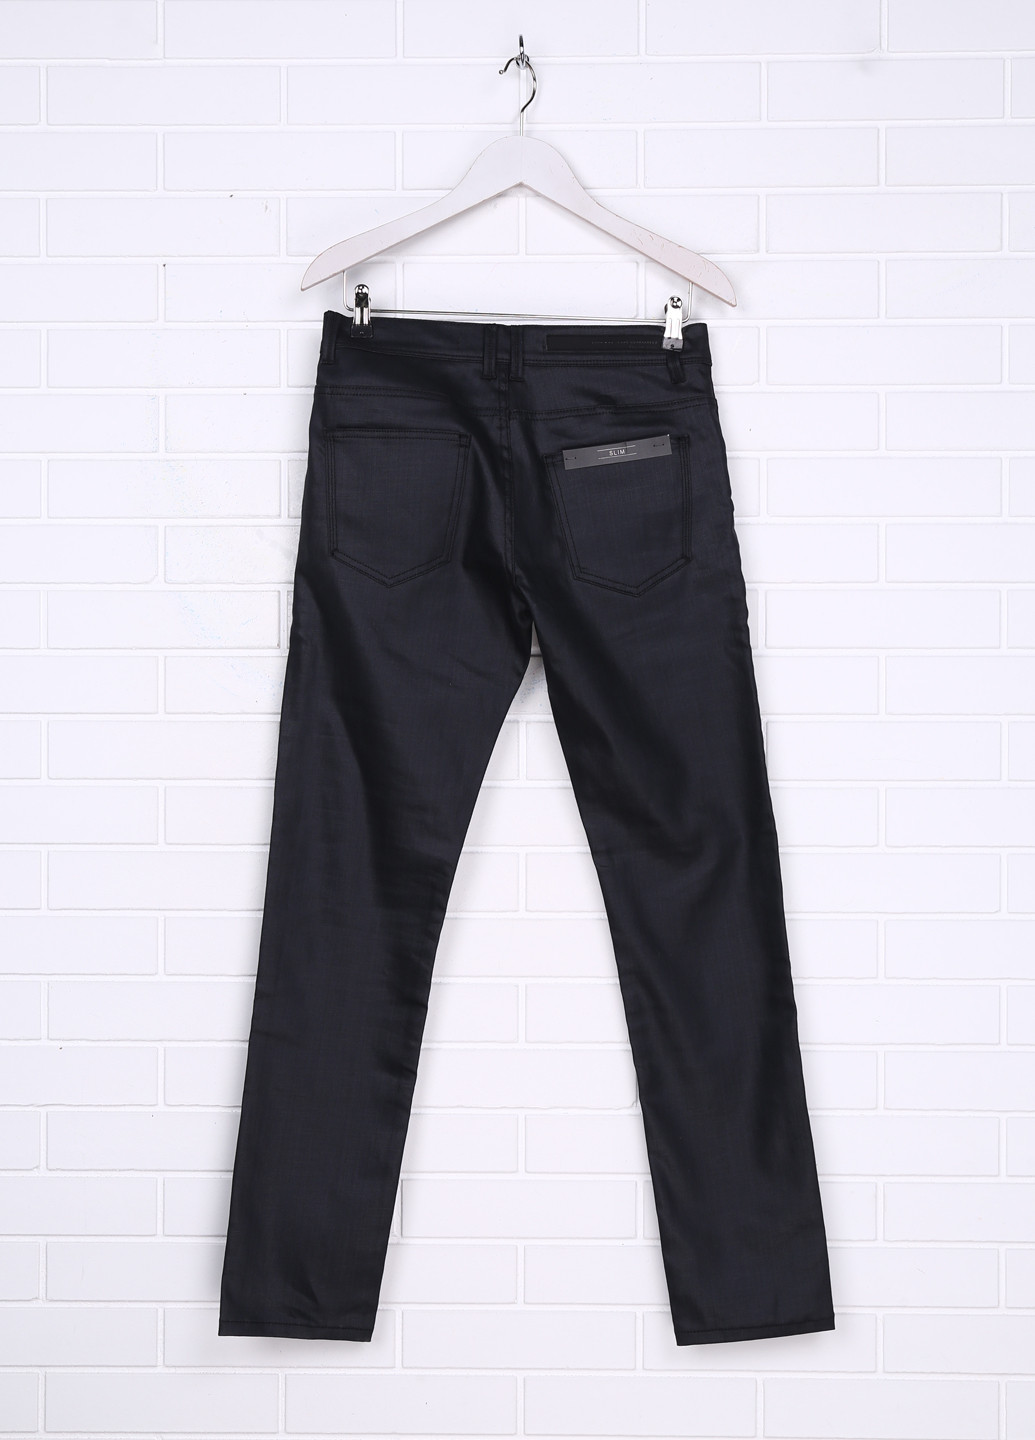 Темно-серые демисезонные со средней талией джинсы Zara